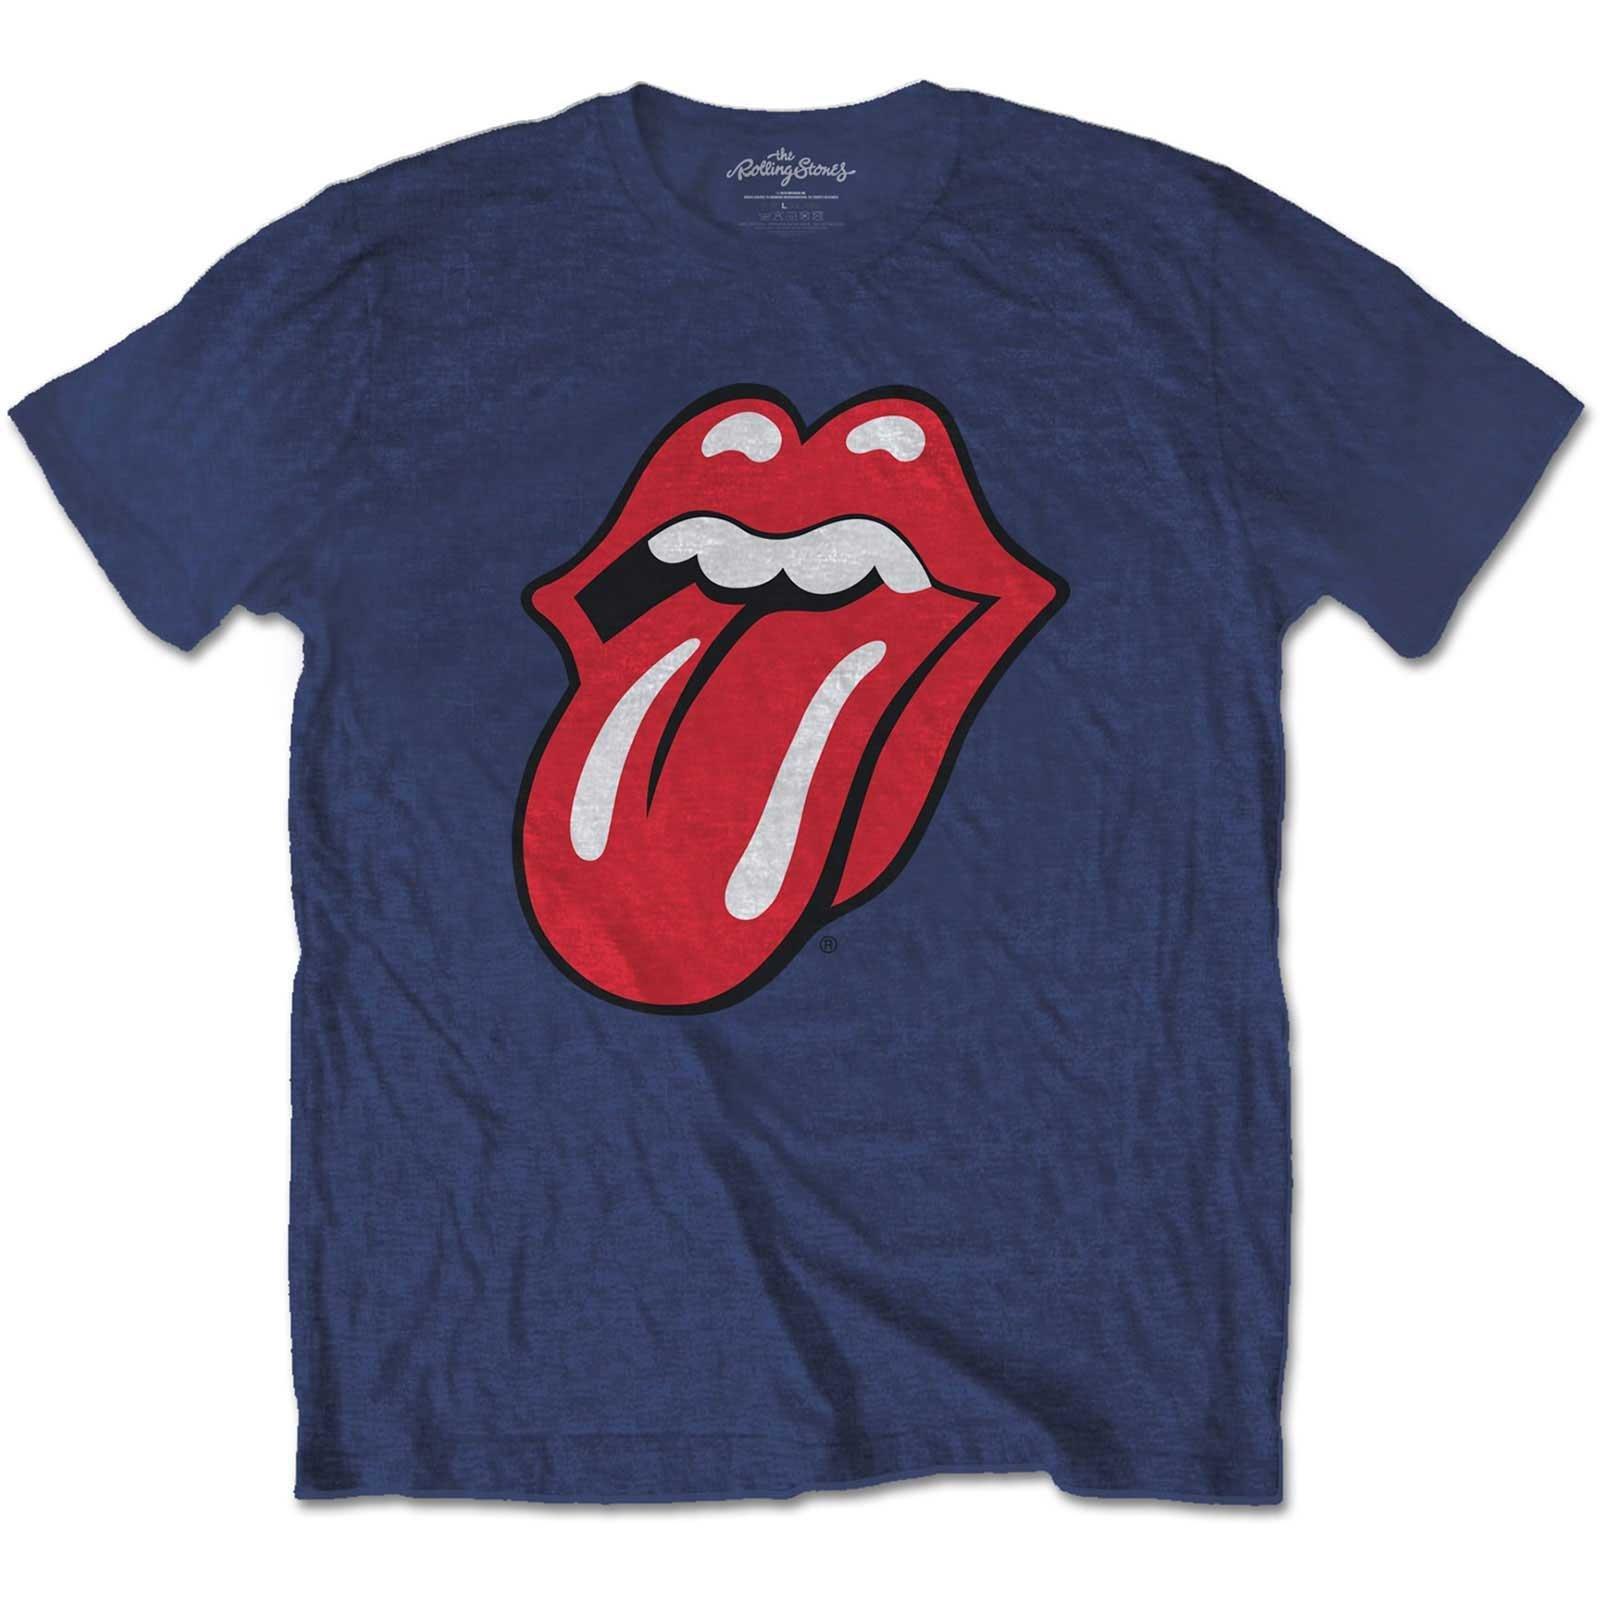 Classic Tshirt Jungen Marine 158/164 von The Rolling Stones